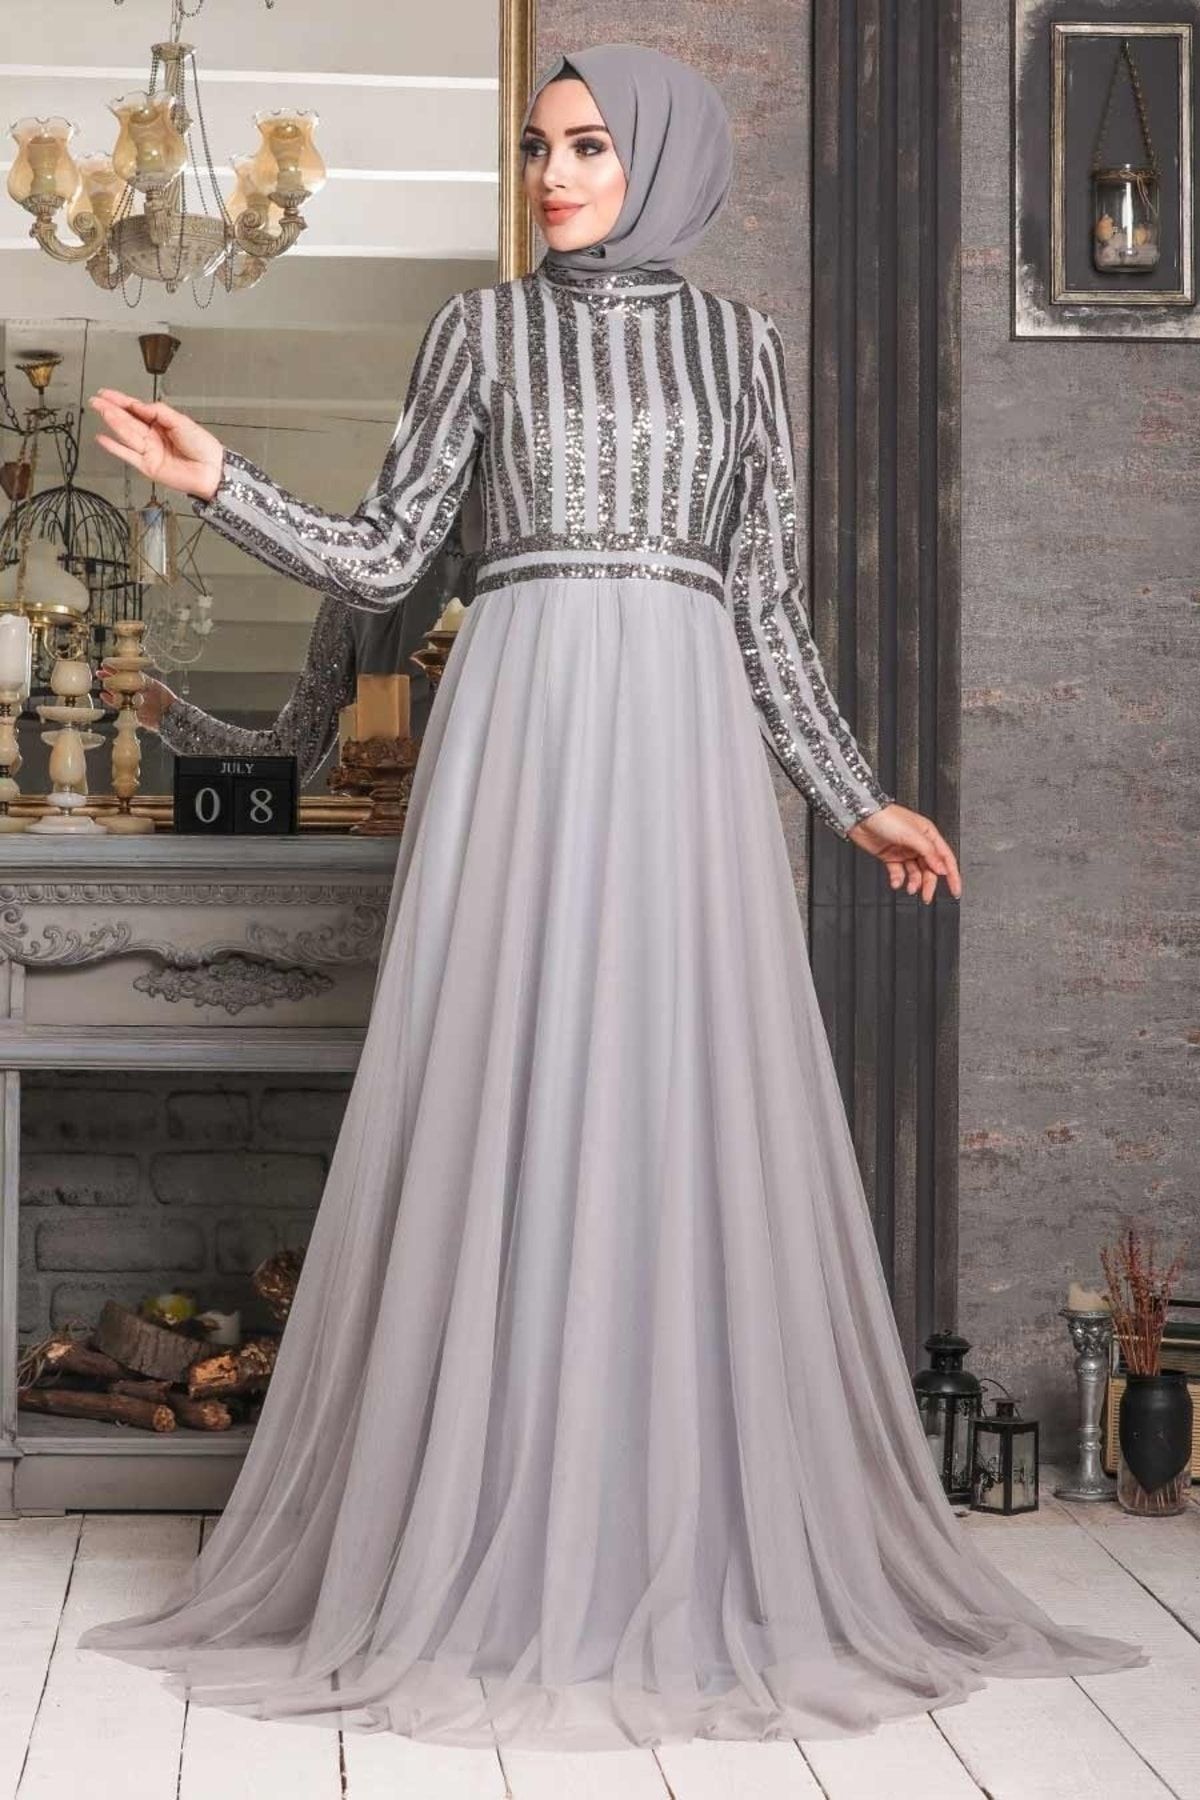 Neva Style Tesettürlü Abiye Elbise - Pul Payetli Gri Tesettür Abiye Elbise 5338gr